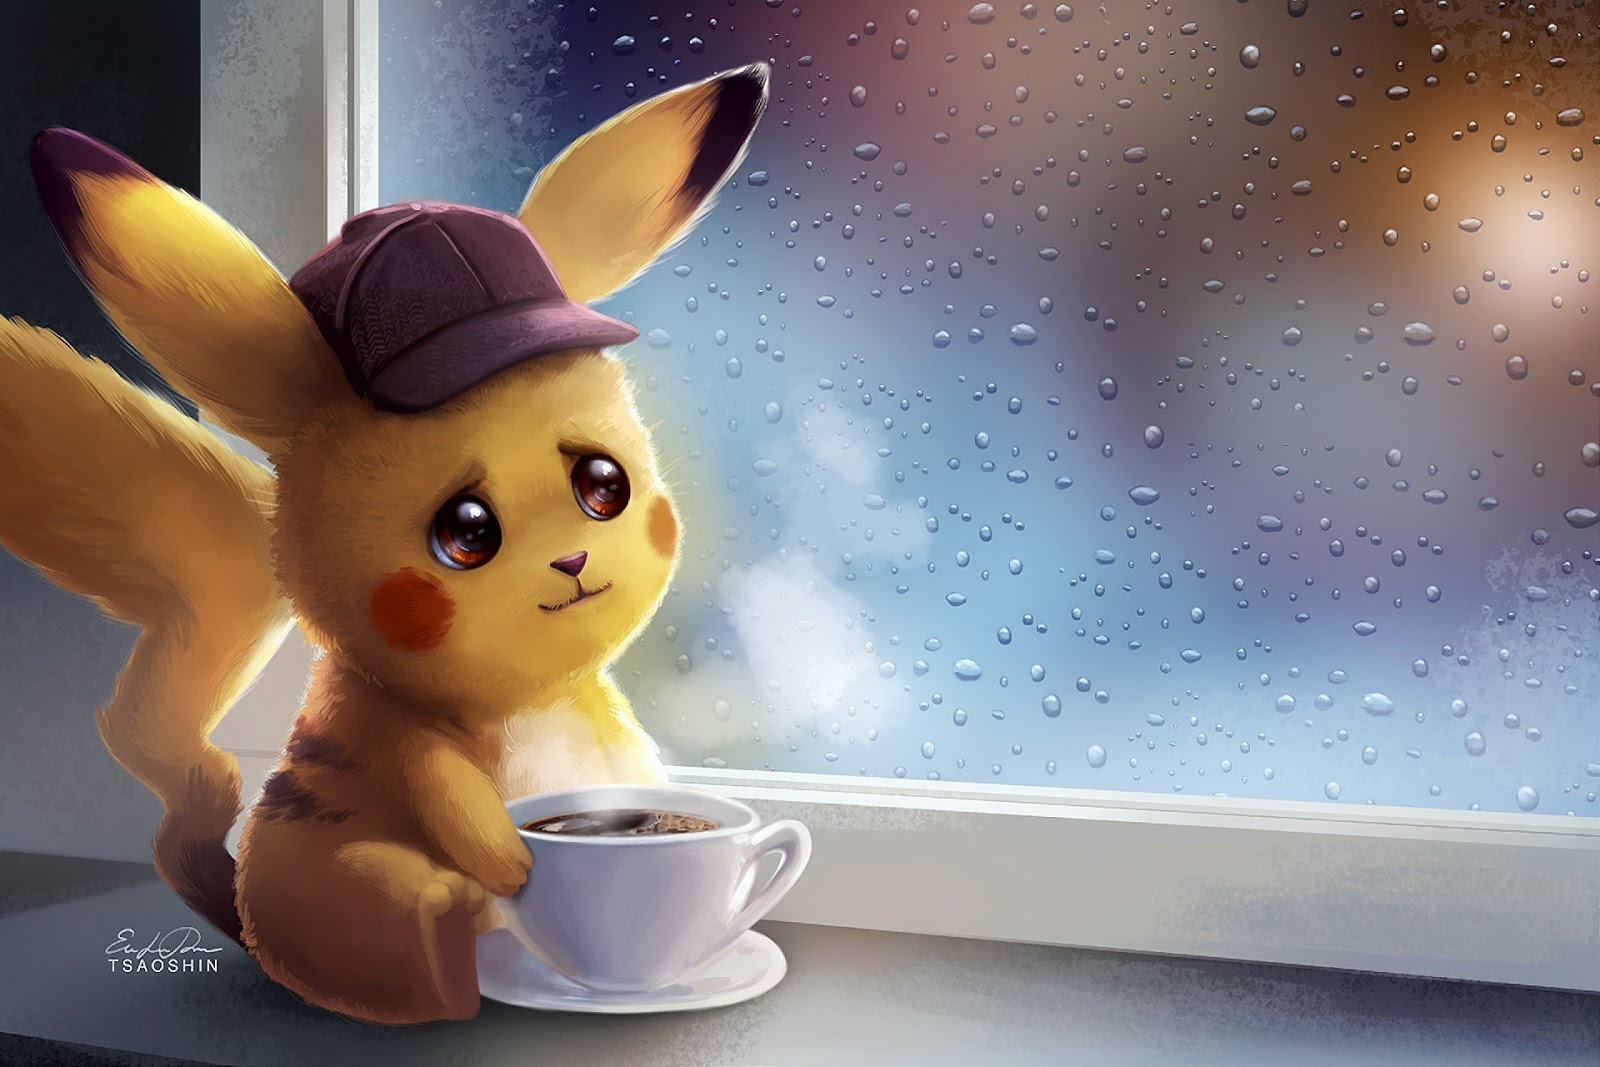 Hình ảnh pikachu khóc